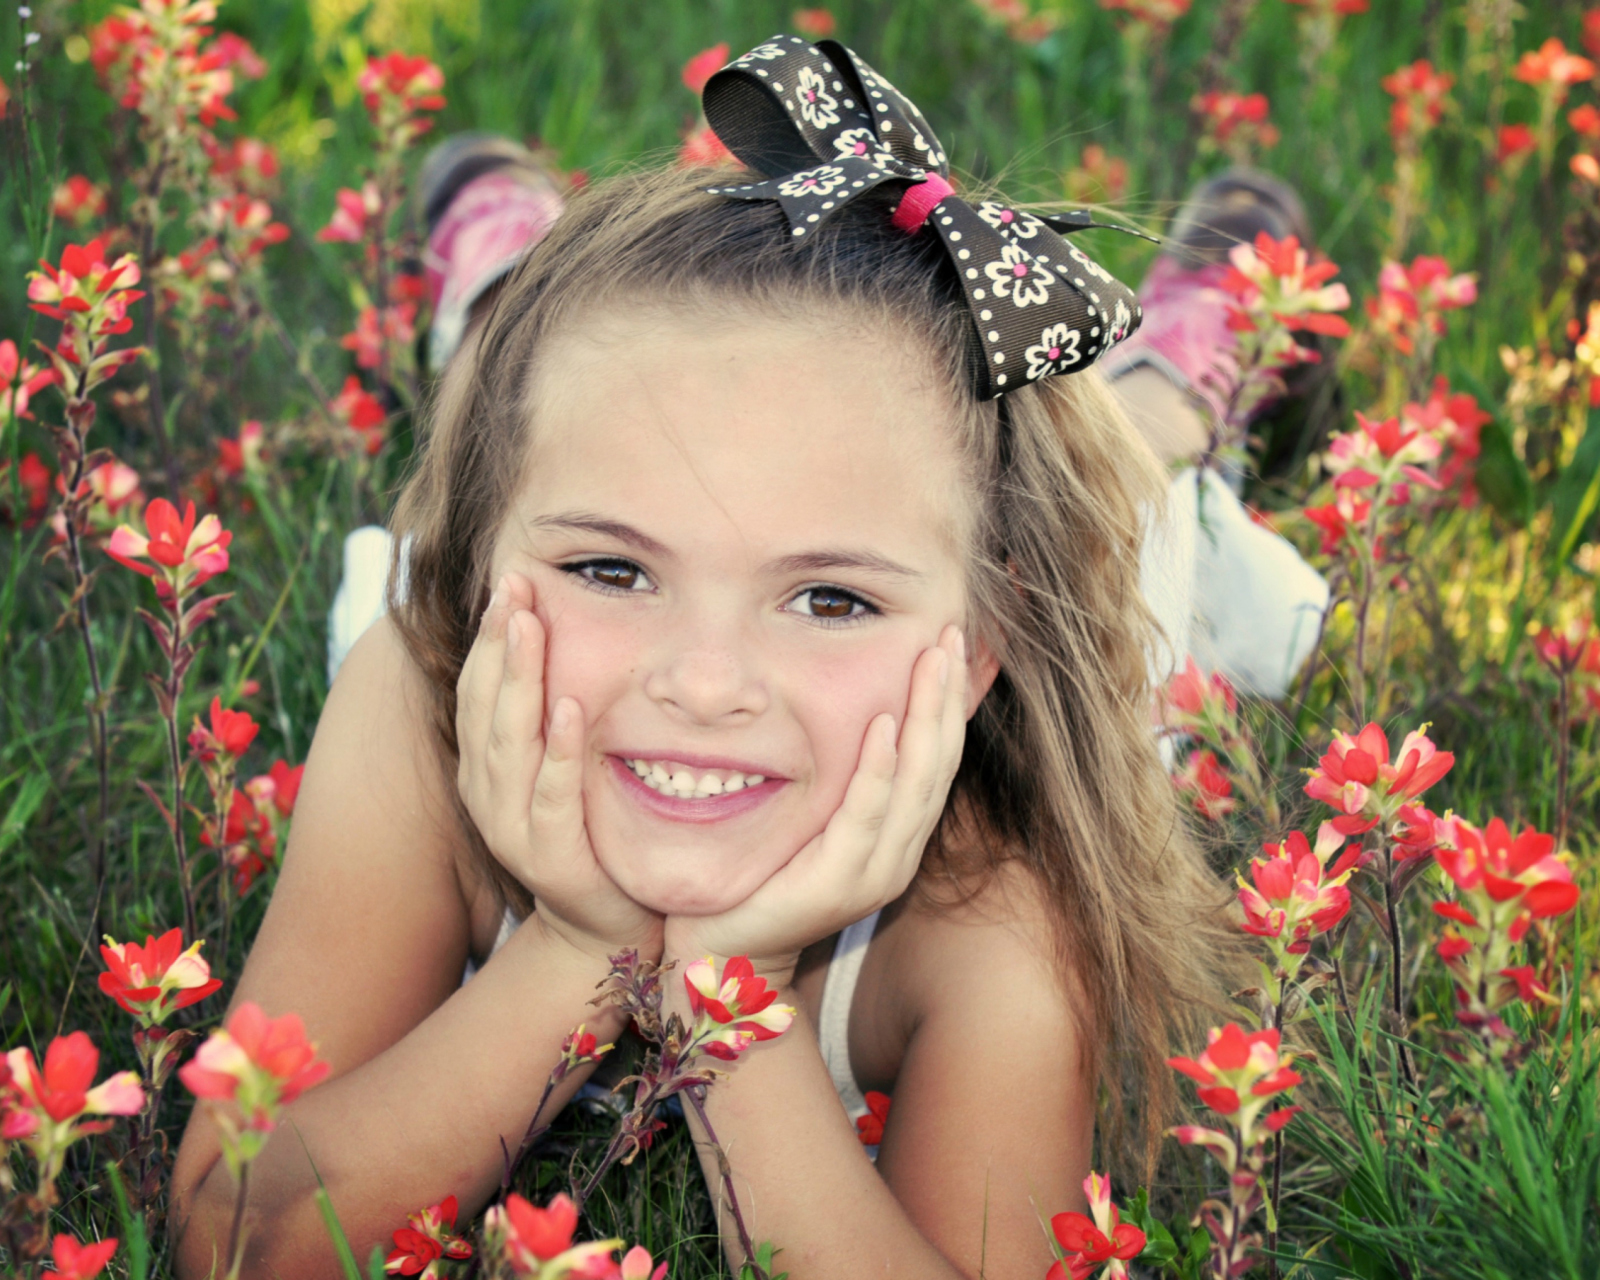 Das Cute Child Smile Wallpaper 1600x1280